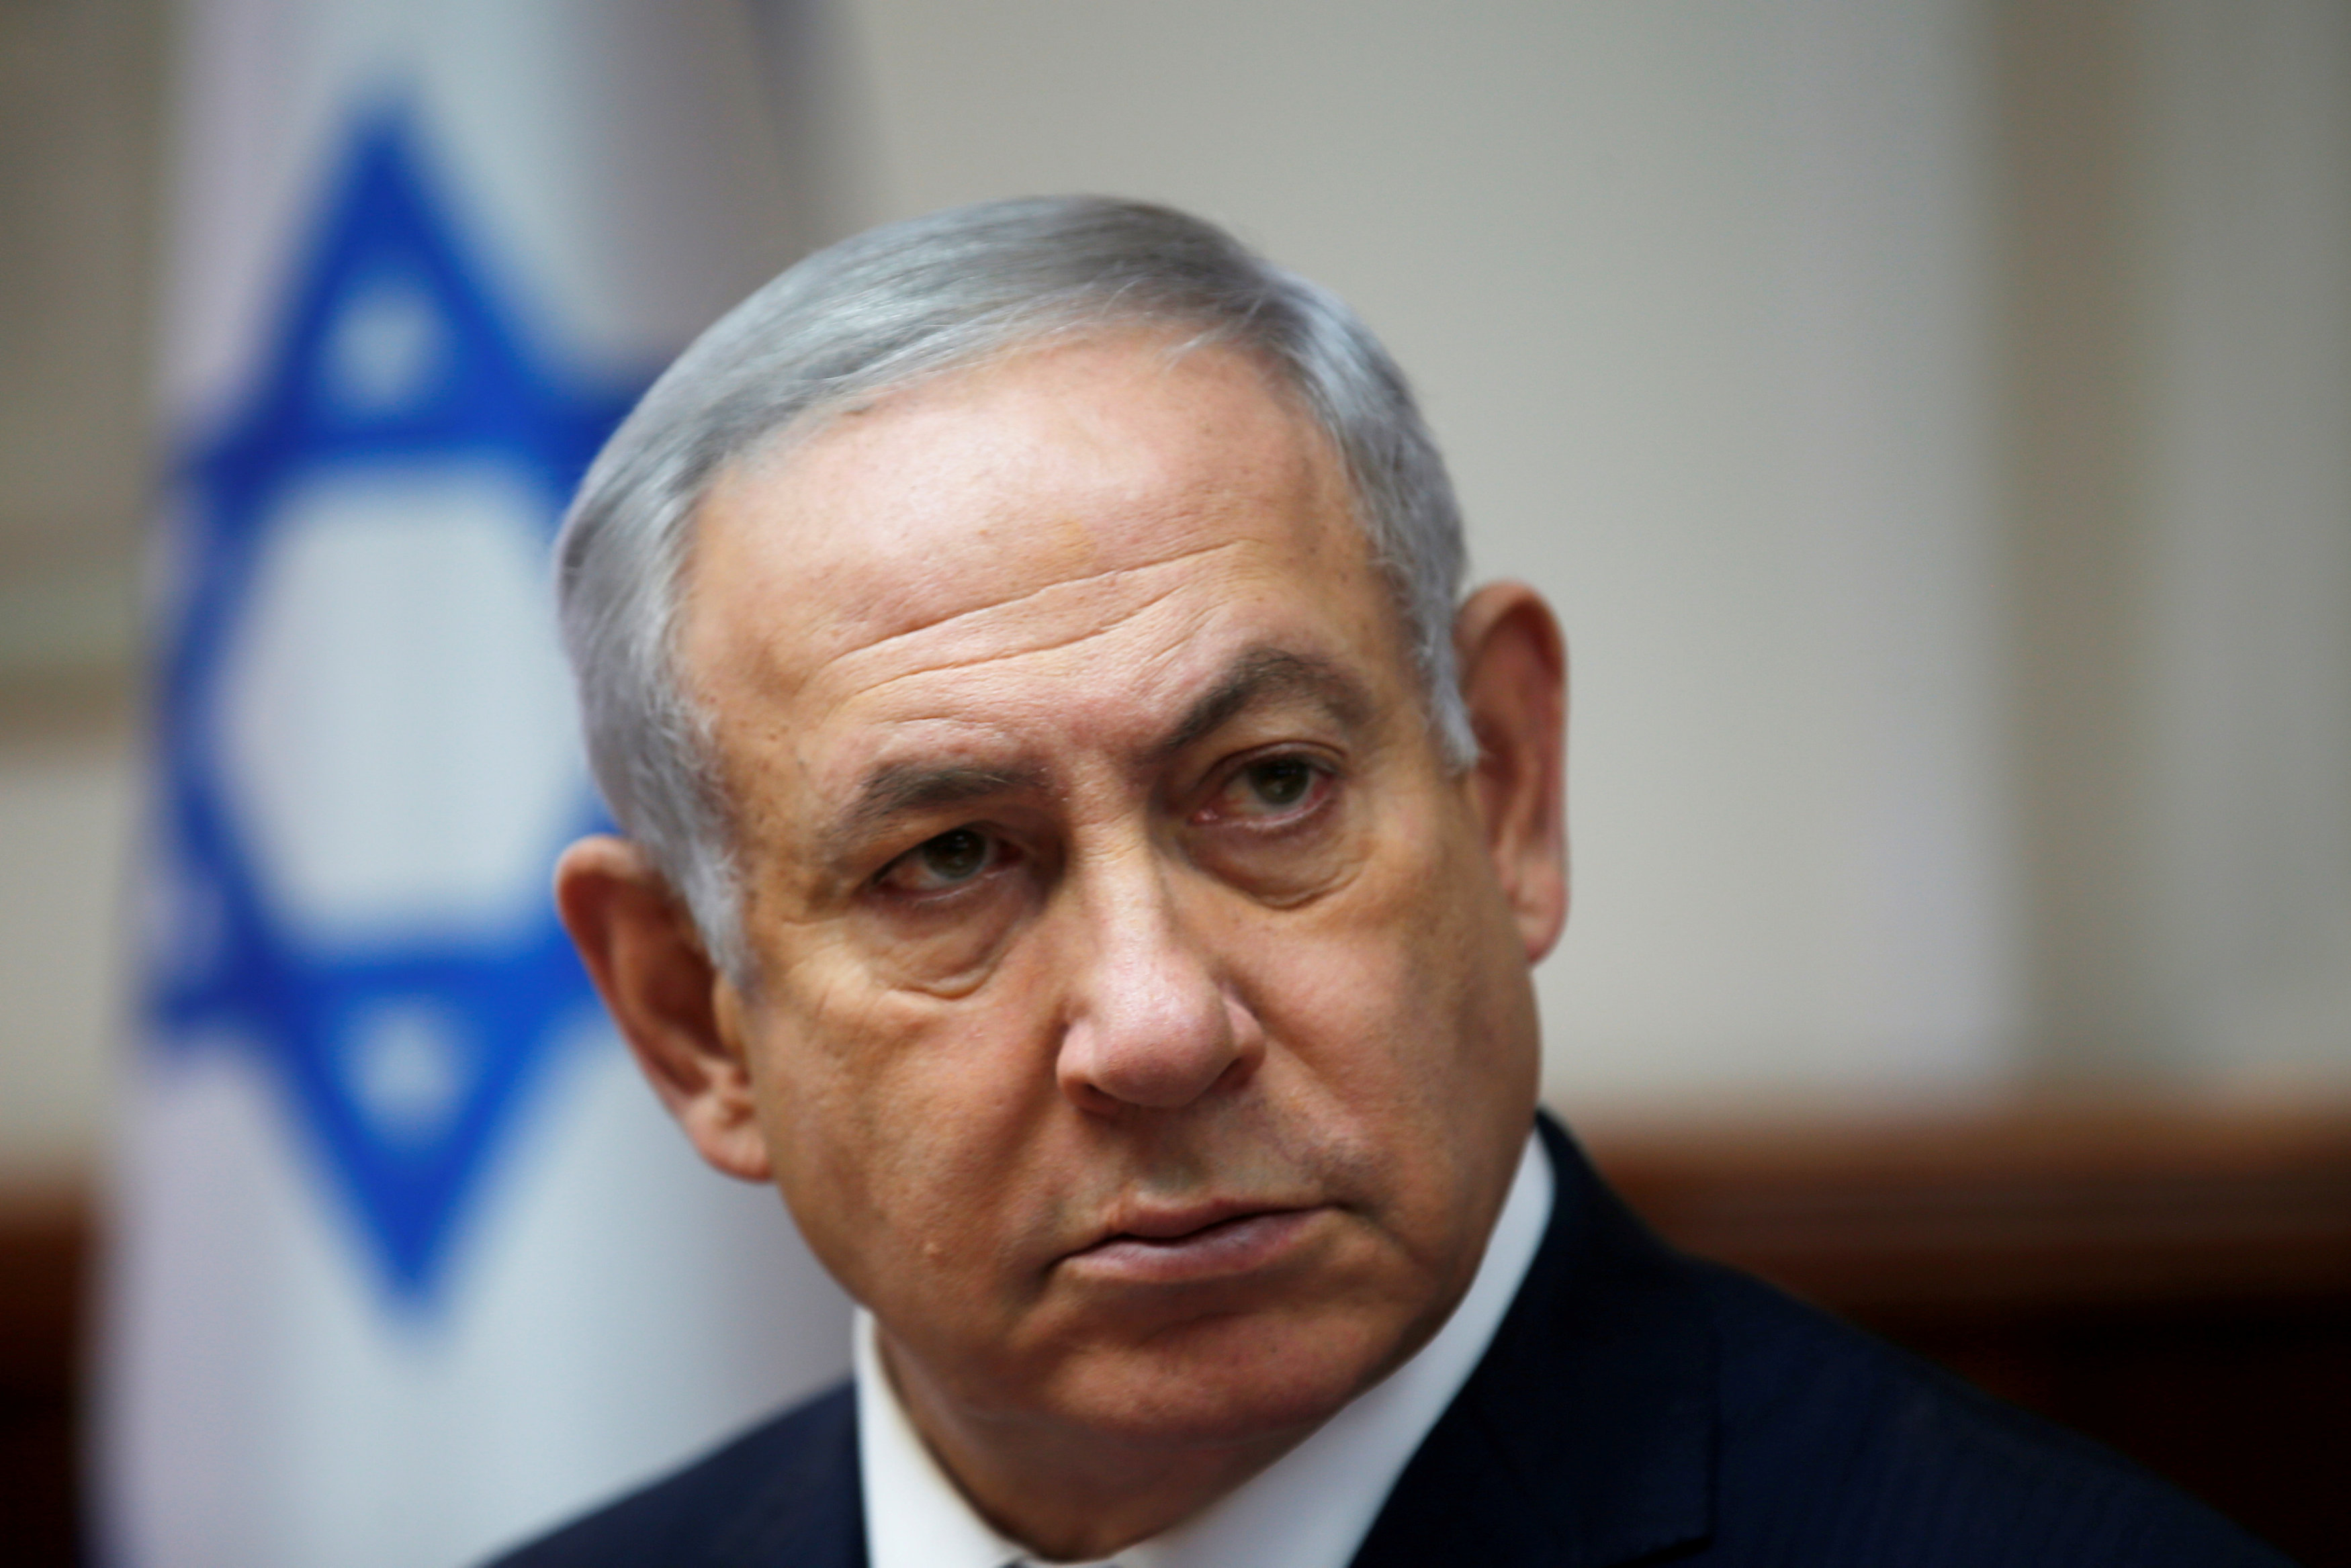 policia israeli recomienda acusar a netanyahu en caso de corrupcion